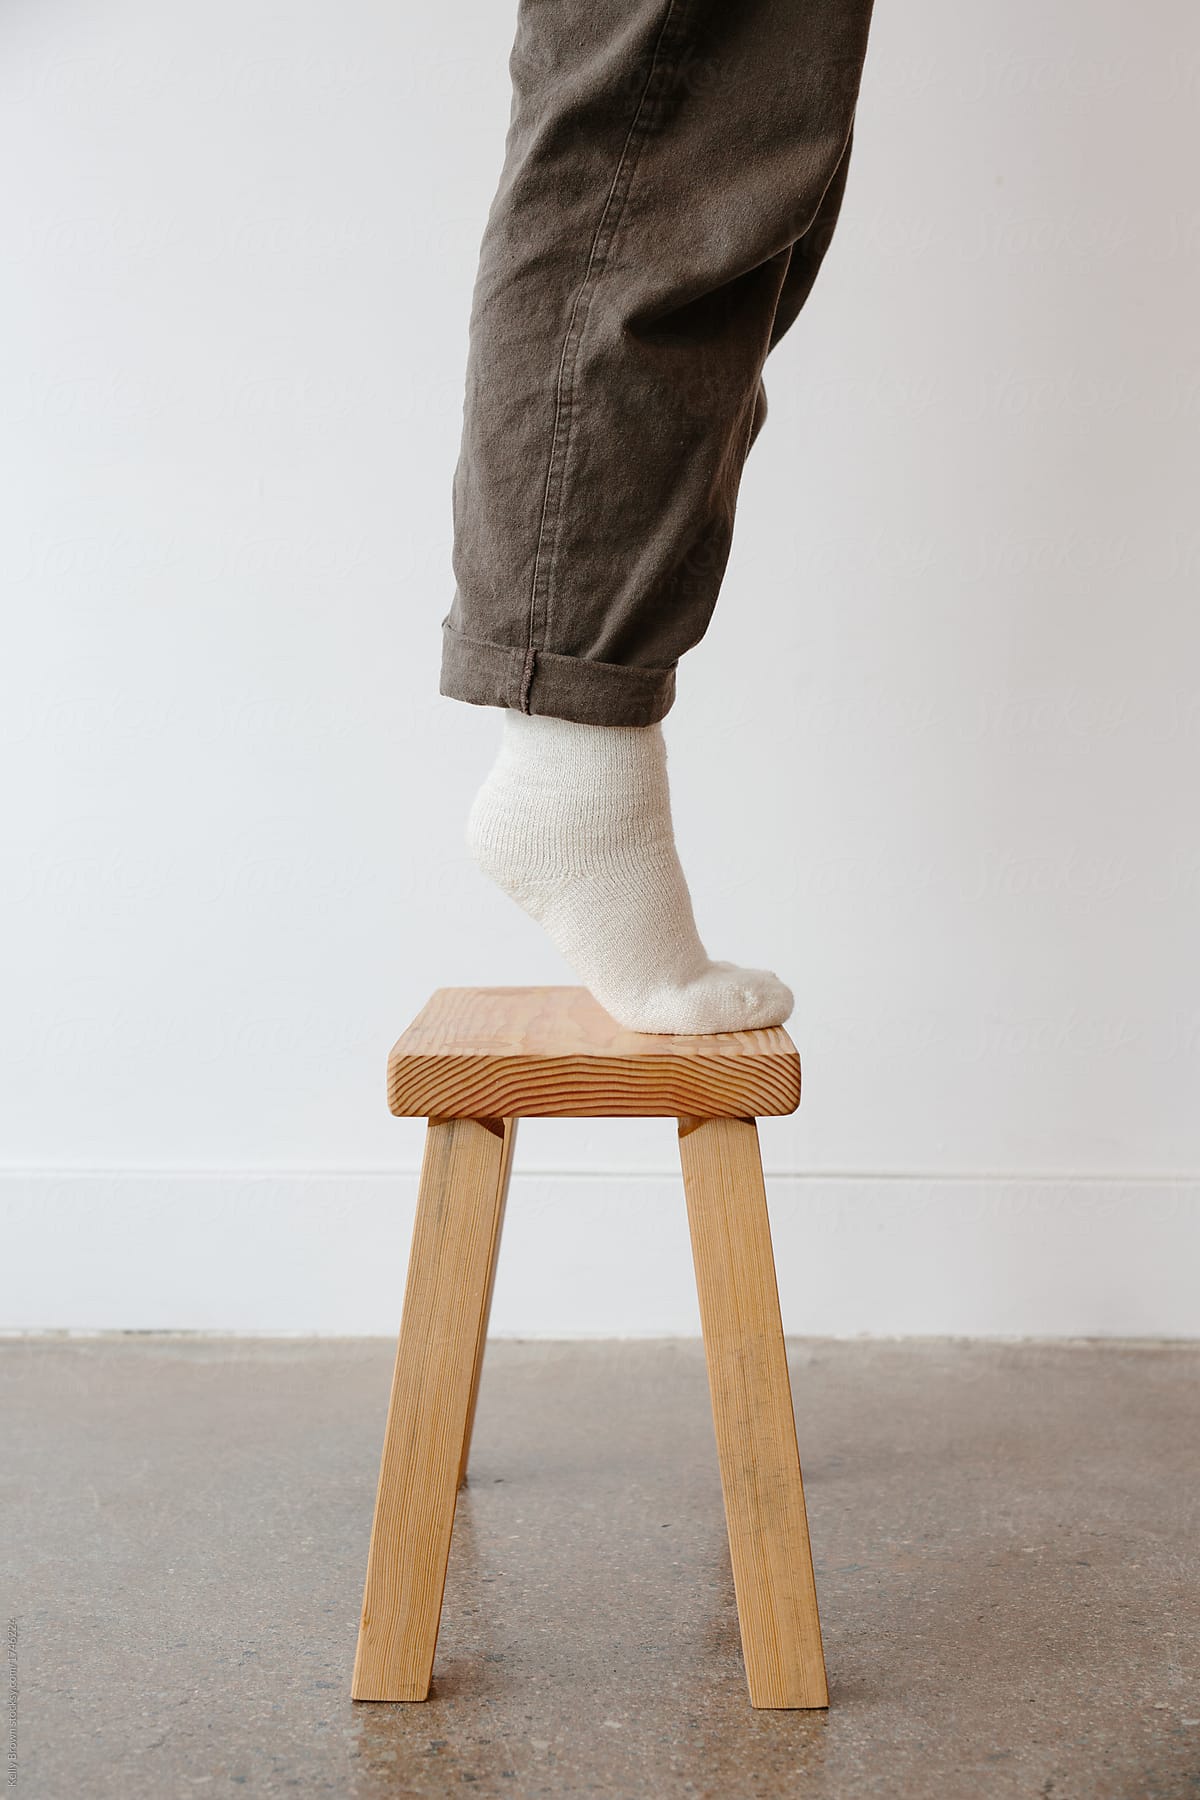 feet on a stool